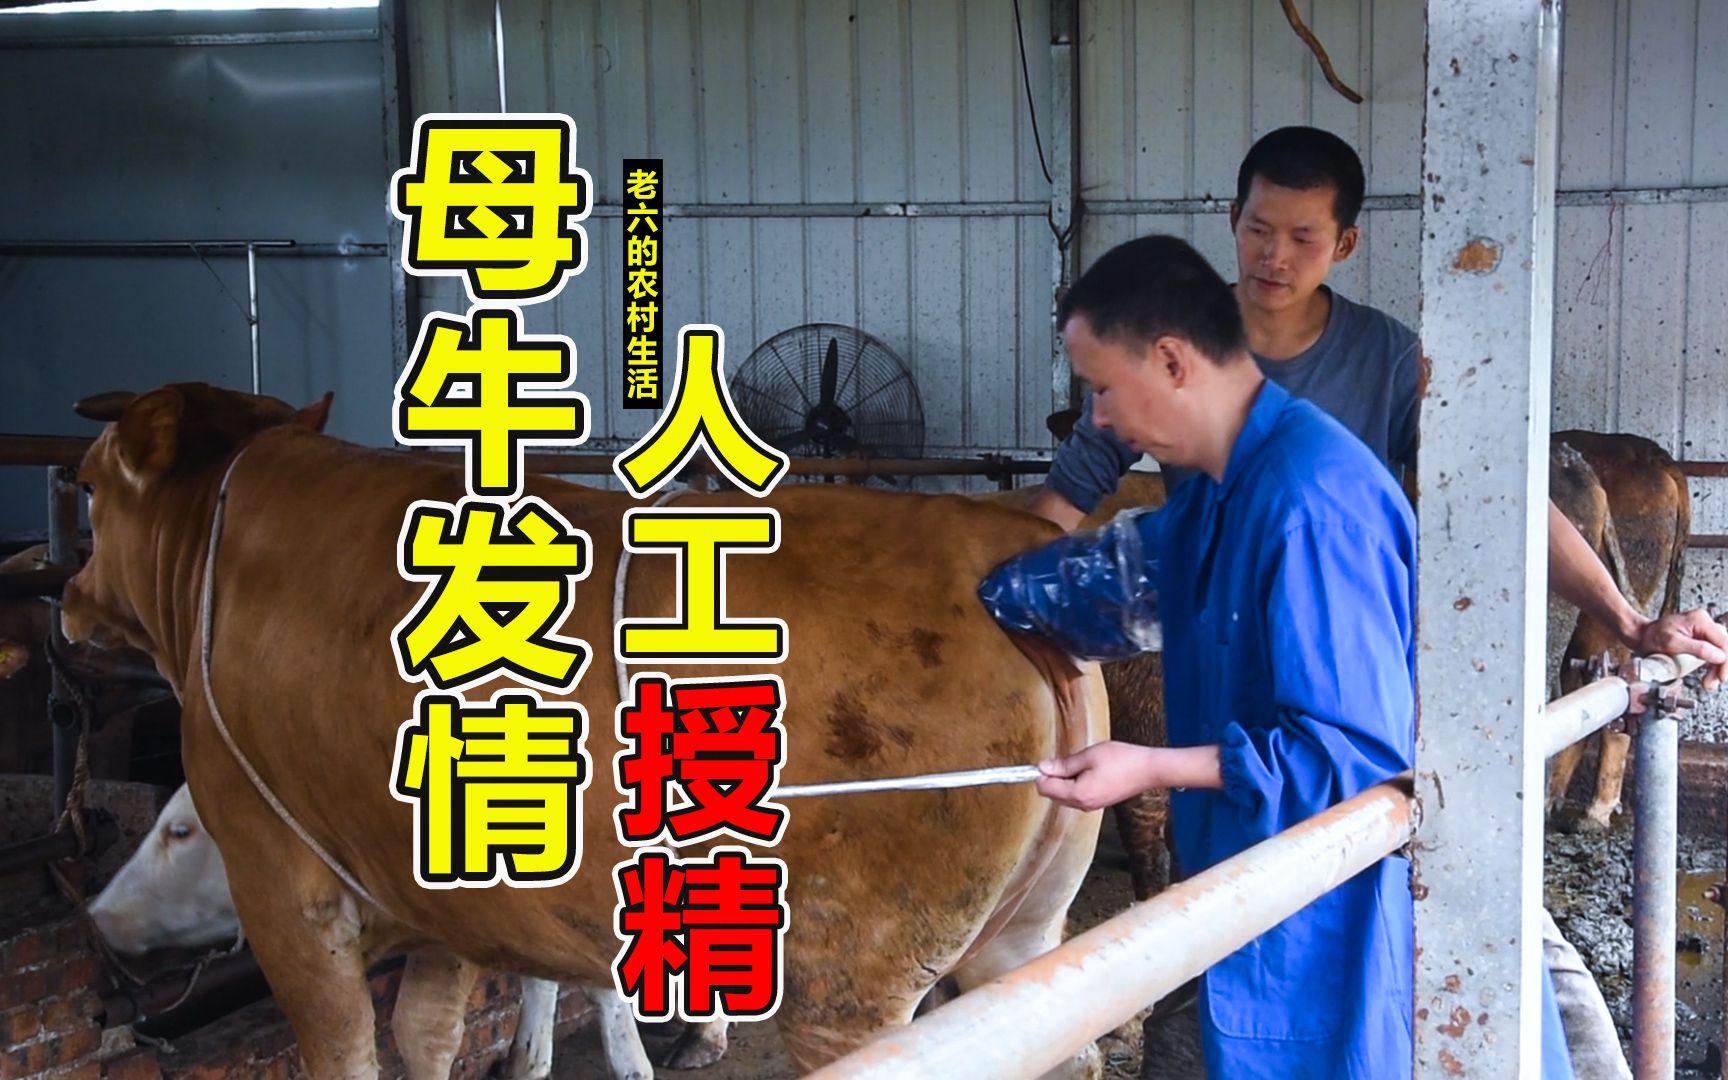 汉中职院农林生物学院赴西乡开展肉牛改良试验-汉中职业技术学院农林生物学院